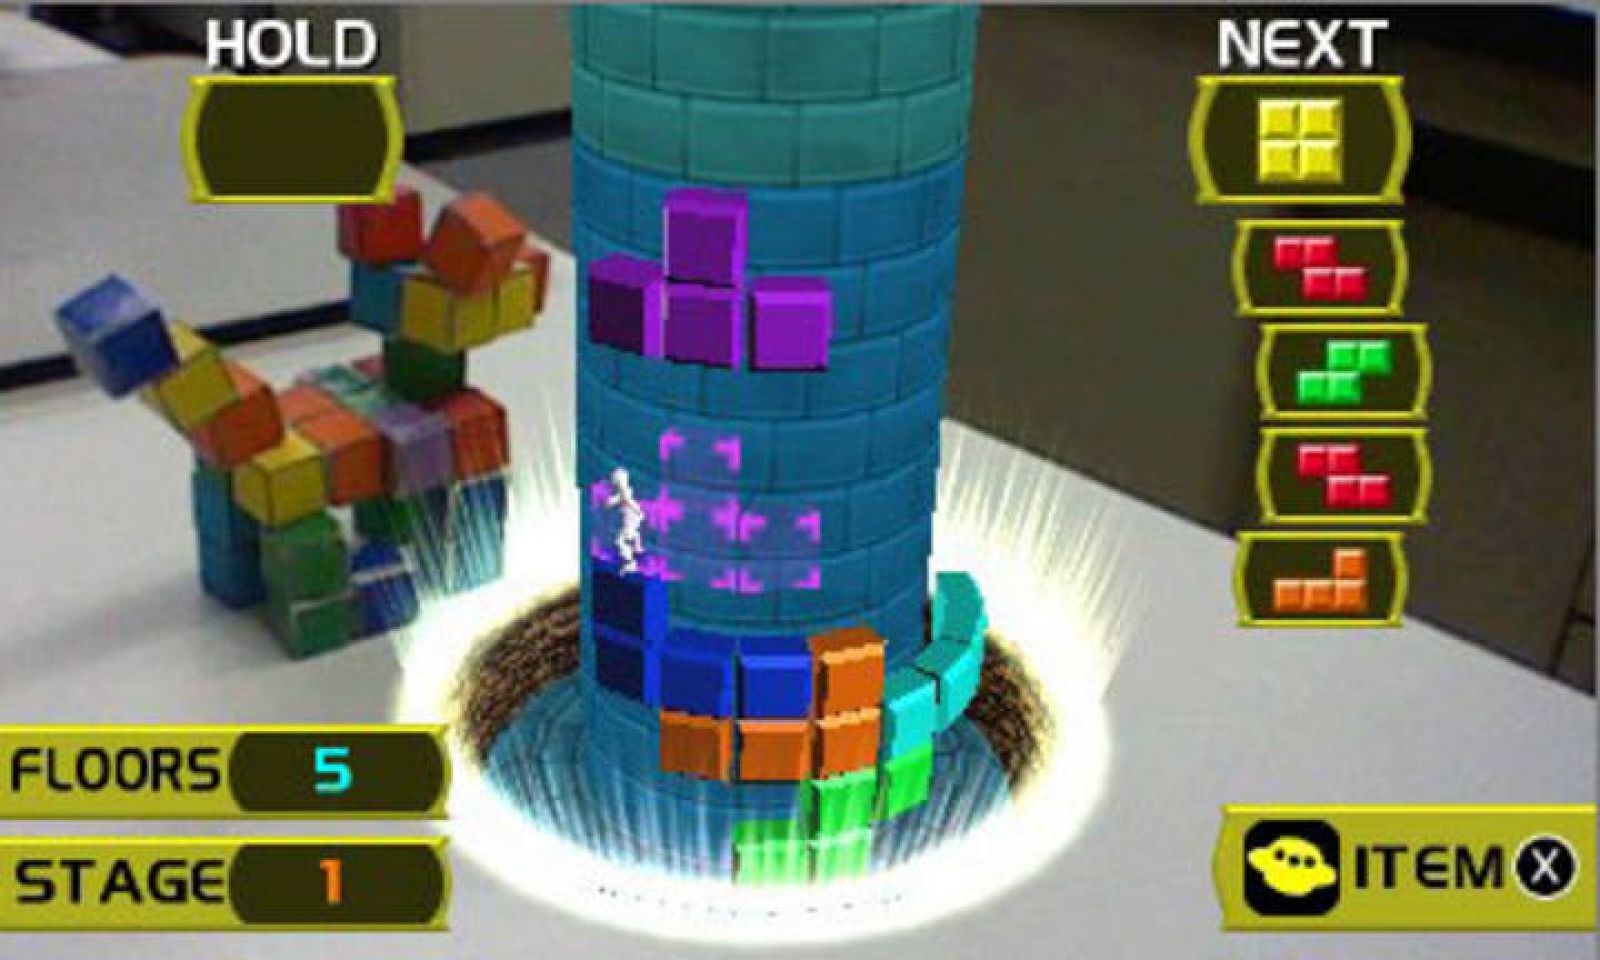 Con una tarjeta de realidad aumentada el juego se proyecta fuera de la consola en 3D sin necesidad de gafas.